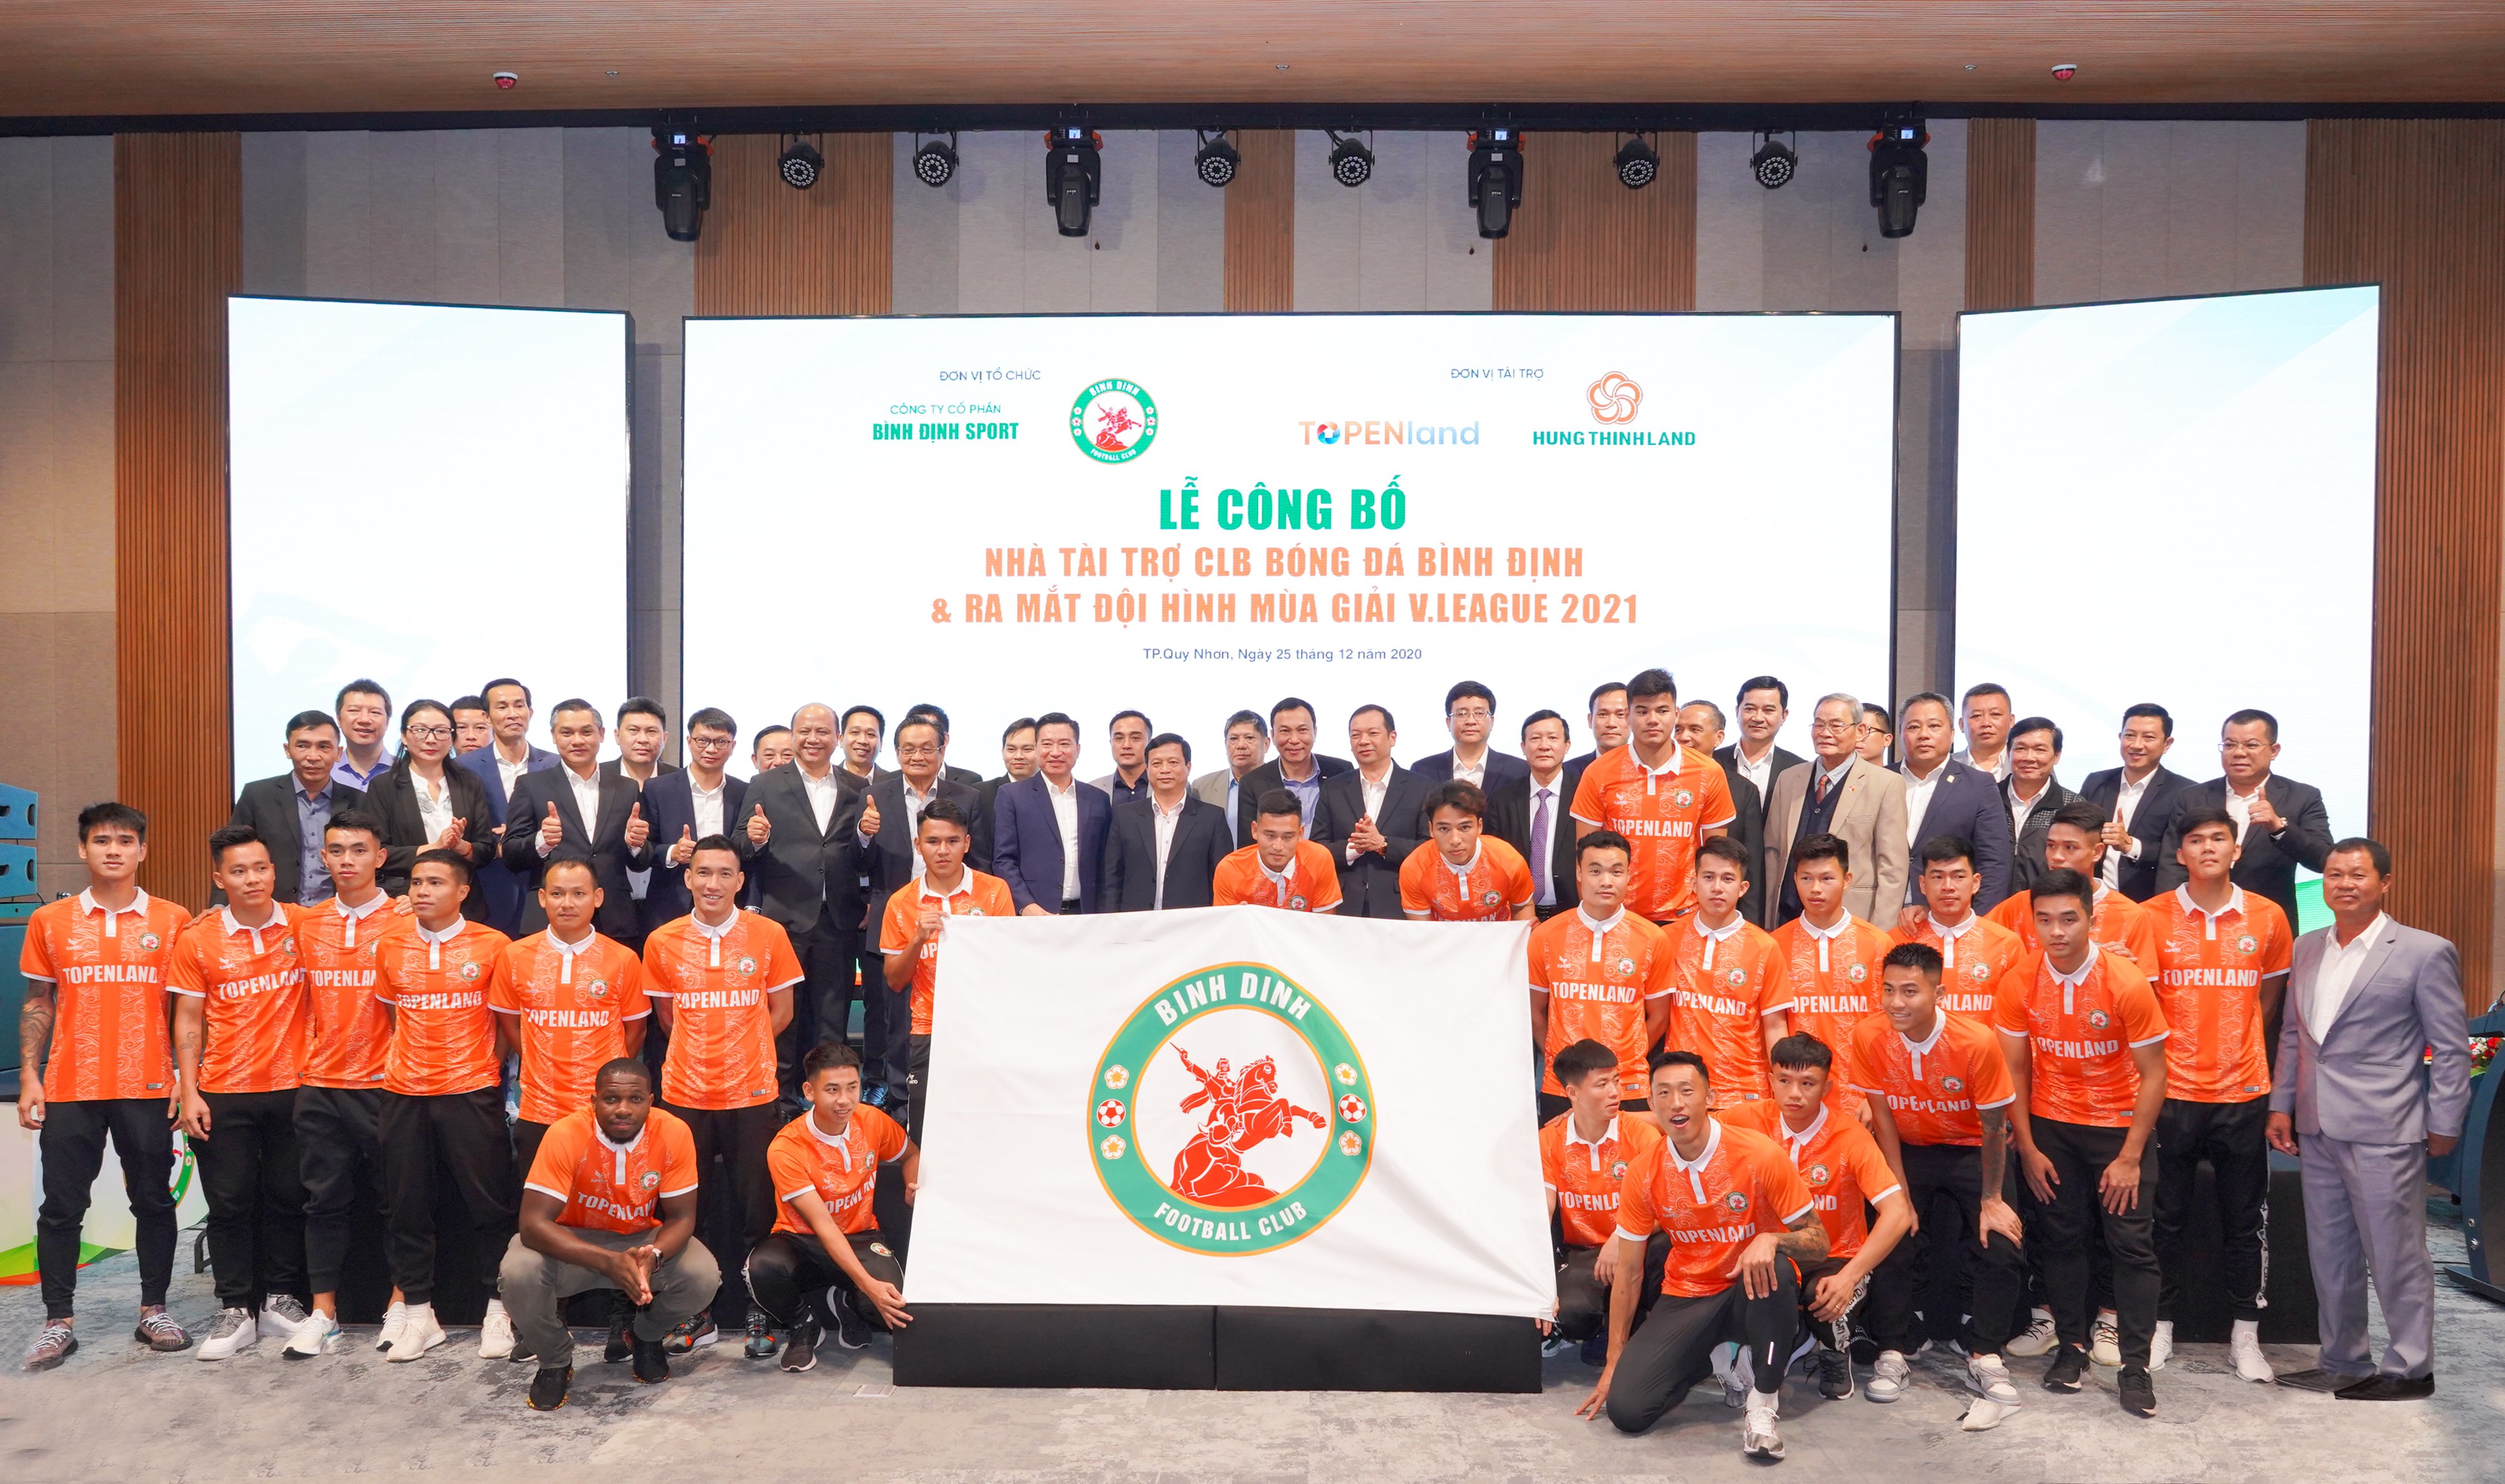 Topenland và Hưng Thịnh Land tài trợ 300 tỷ cho CLB bóng đá Topenland Bình Định trong 3 mùa giải V.League 2021 - 2023 - Bóng Đá